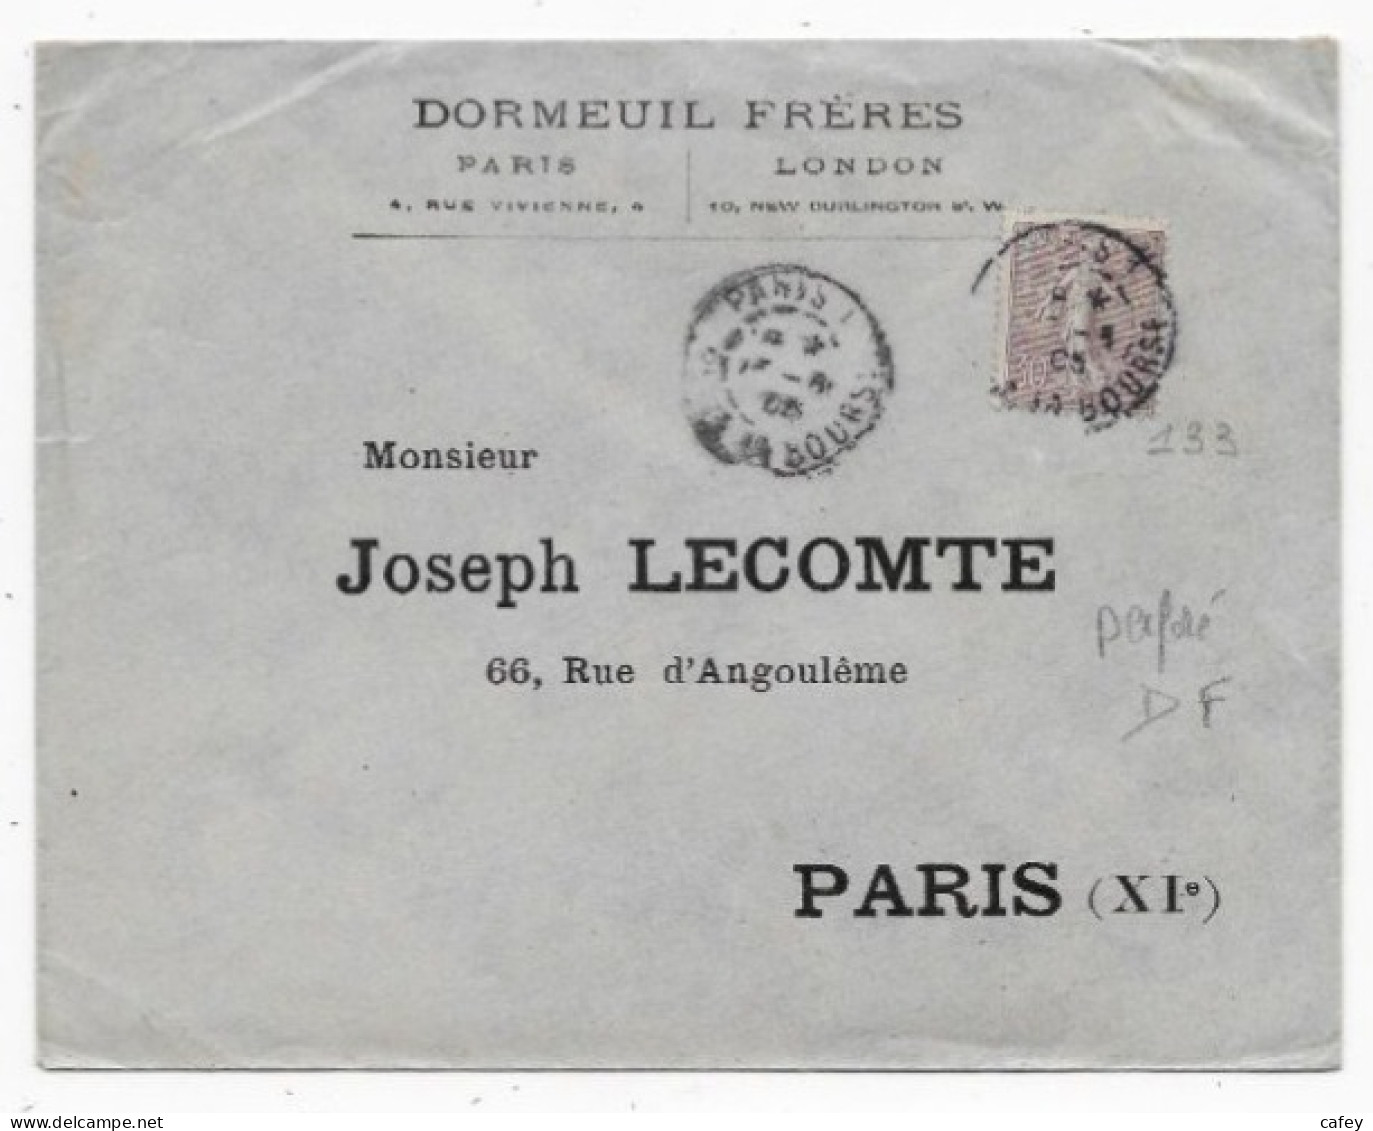 Lettre De PARIS P/ PARIS 1905 Timbre 30c SEMEUSE LIGNEE Perforé DF Entête DORMEUIL FRERES Voir Tarif - 1877-1920: Semi-Moderne